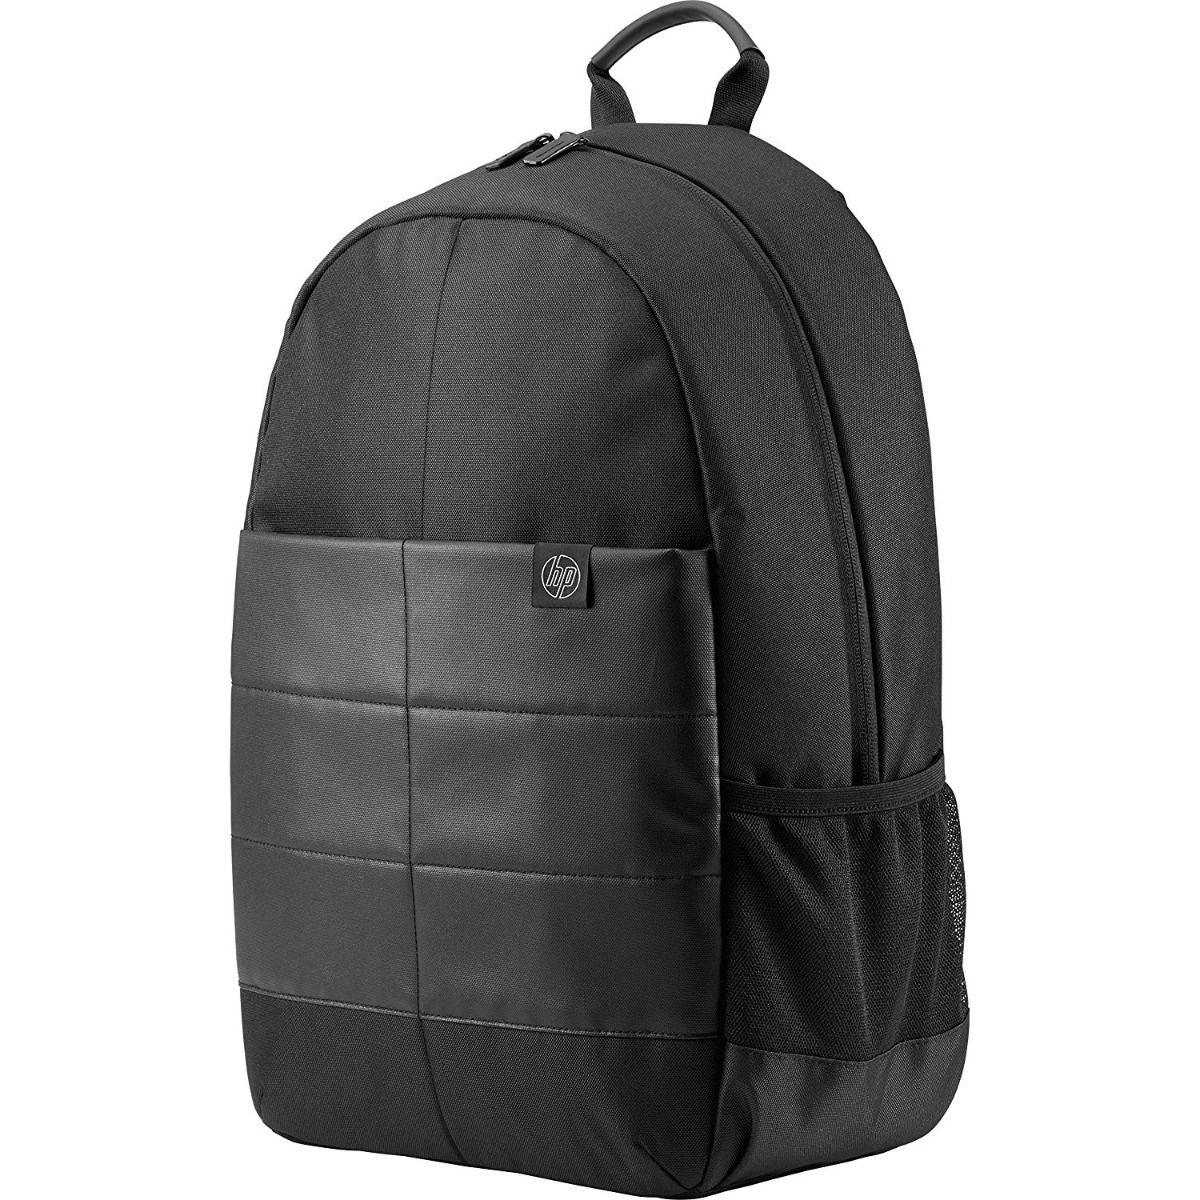 L'avvento laptops Discovery Backpack Bag - 15.6, Black - BG04B